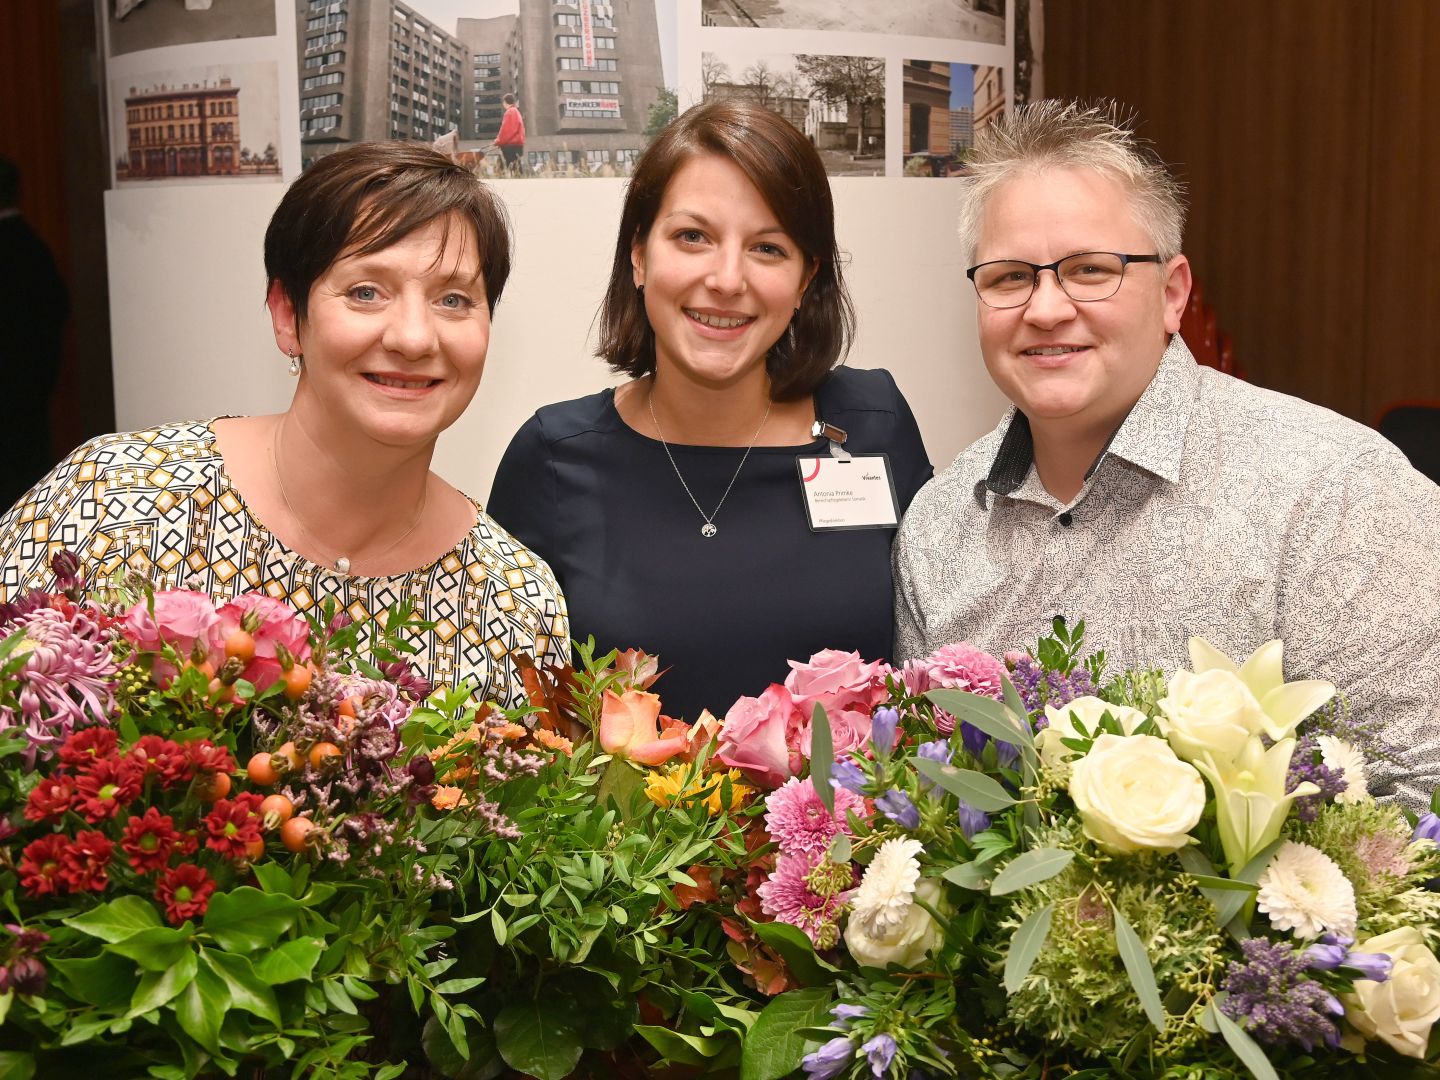 Pflege im Krankenhaus in Berlin-Kreuzberg: Links ist die ehemalige, rechts die neue Pflegedirektorin und zwischen ihnen eine Bereichspflegeleiterin posieren lächelnd mit Blumensträußen während der Amtsübergabe.